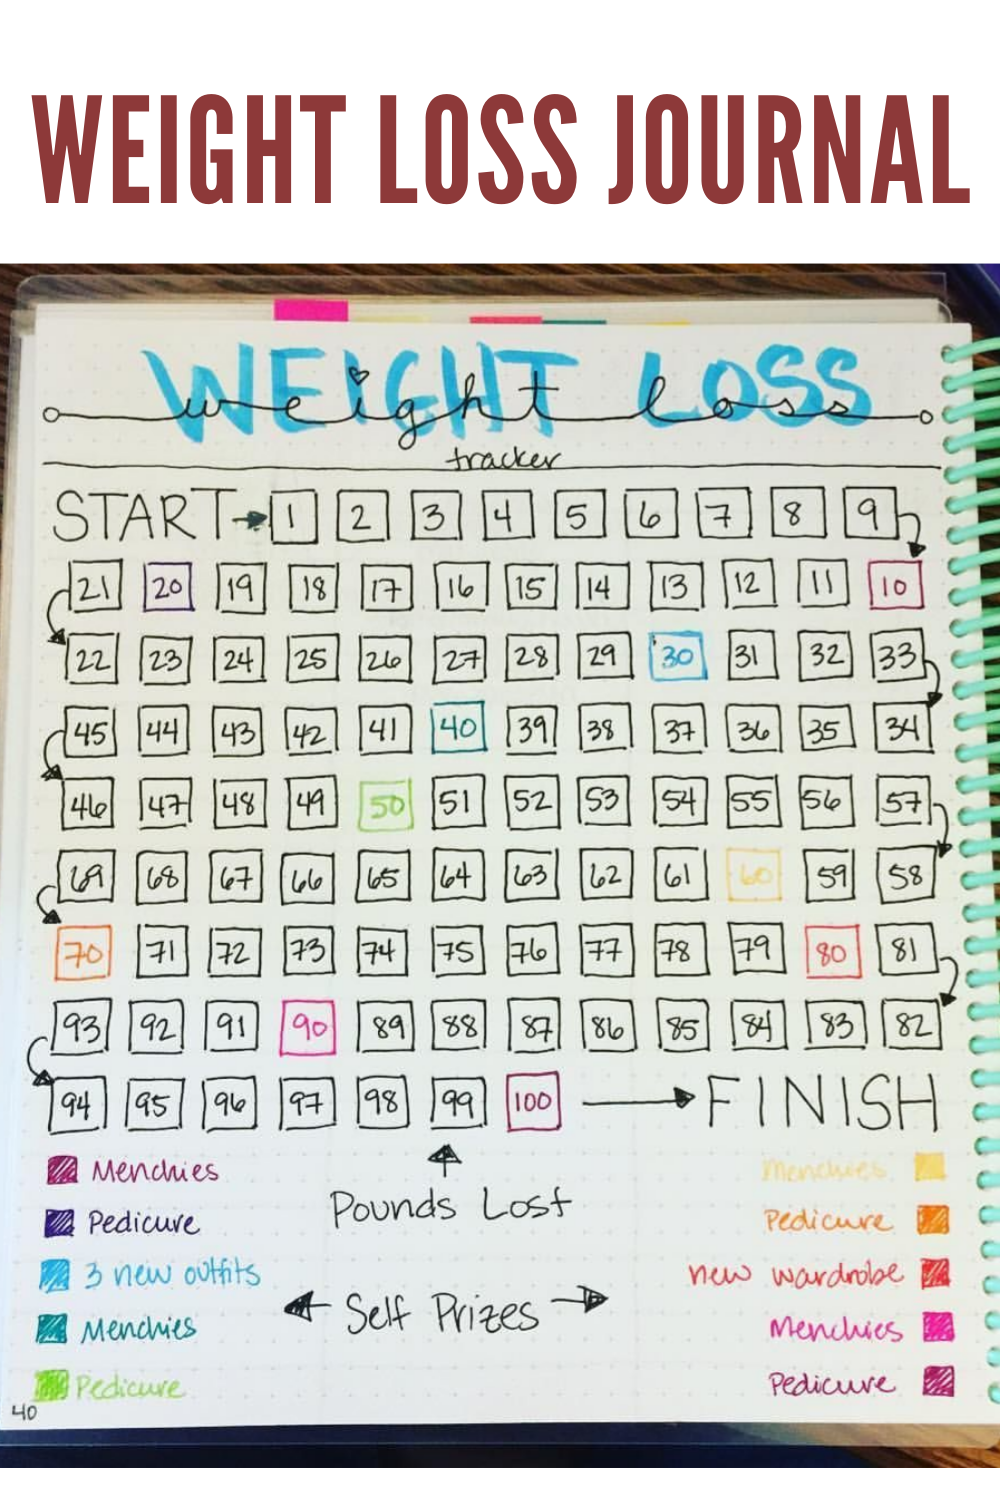 Weight loss journal - Weight loss journal -   15 fitness Journal rewards ideas